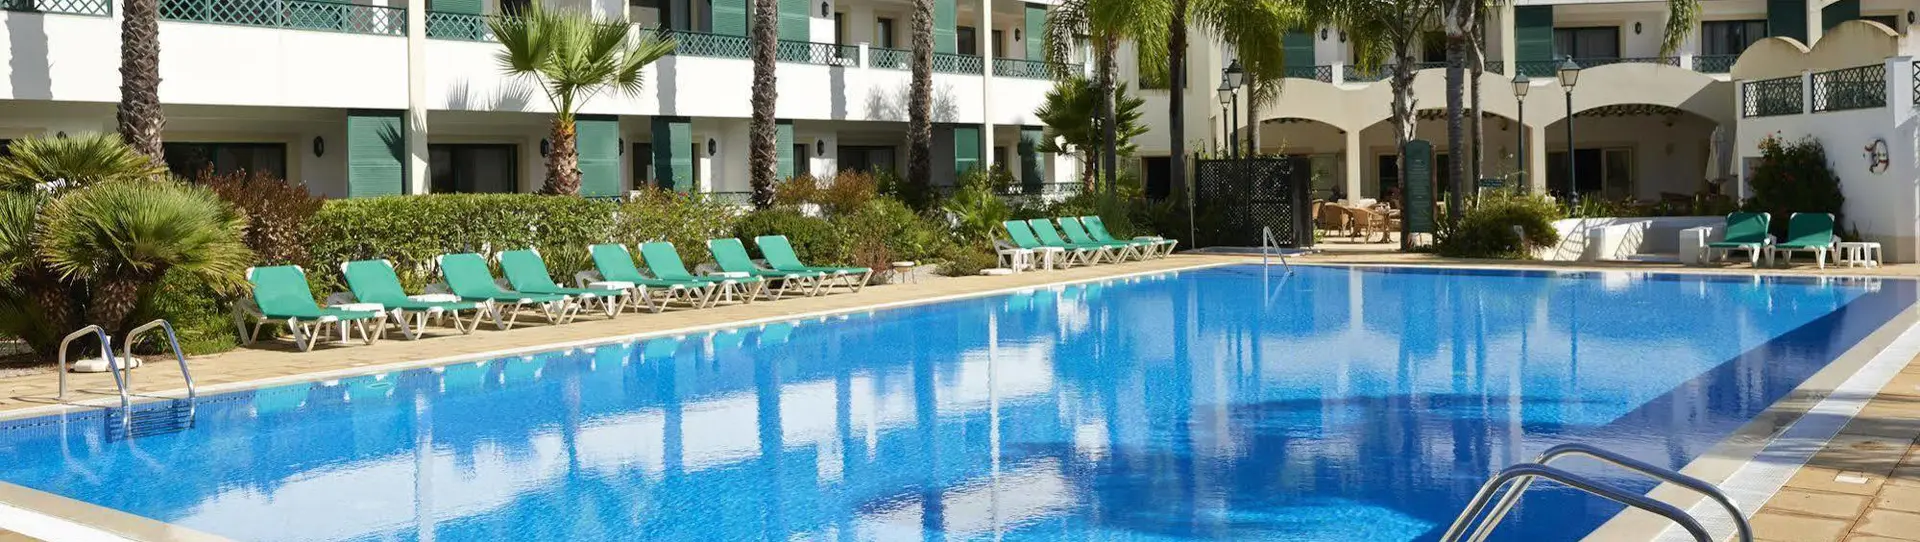 Portugal golf holidays - Formosa Park Hotel Apartamento - Photo 1